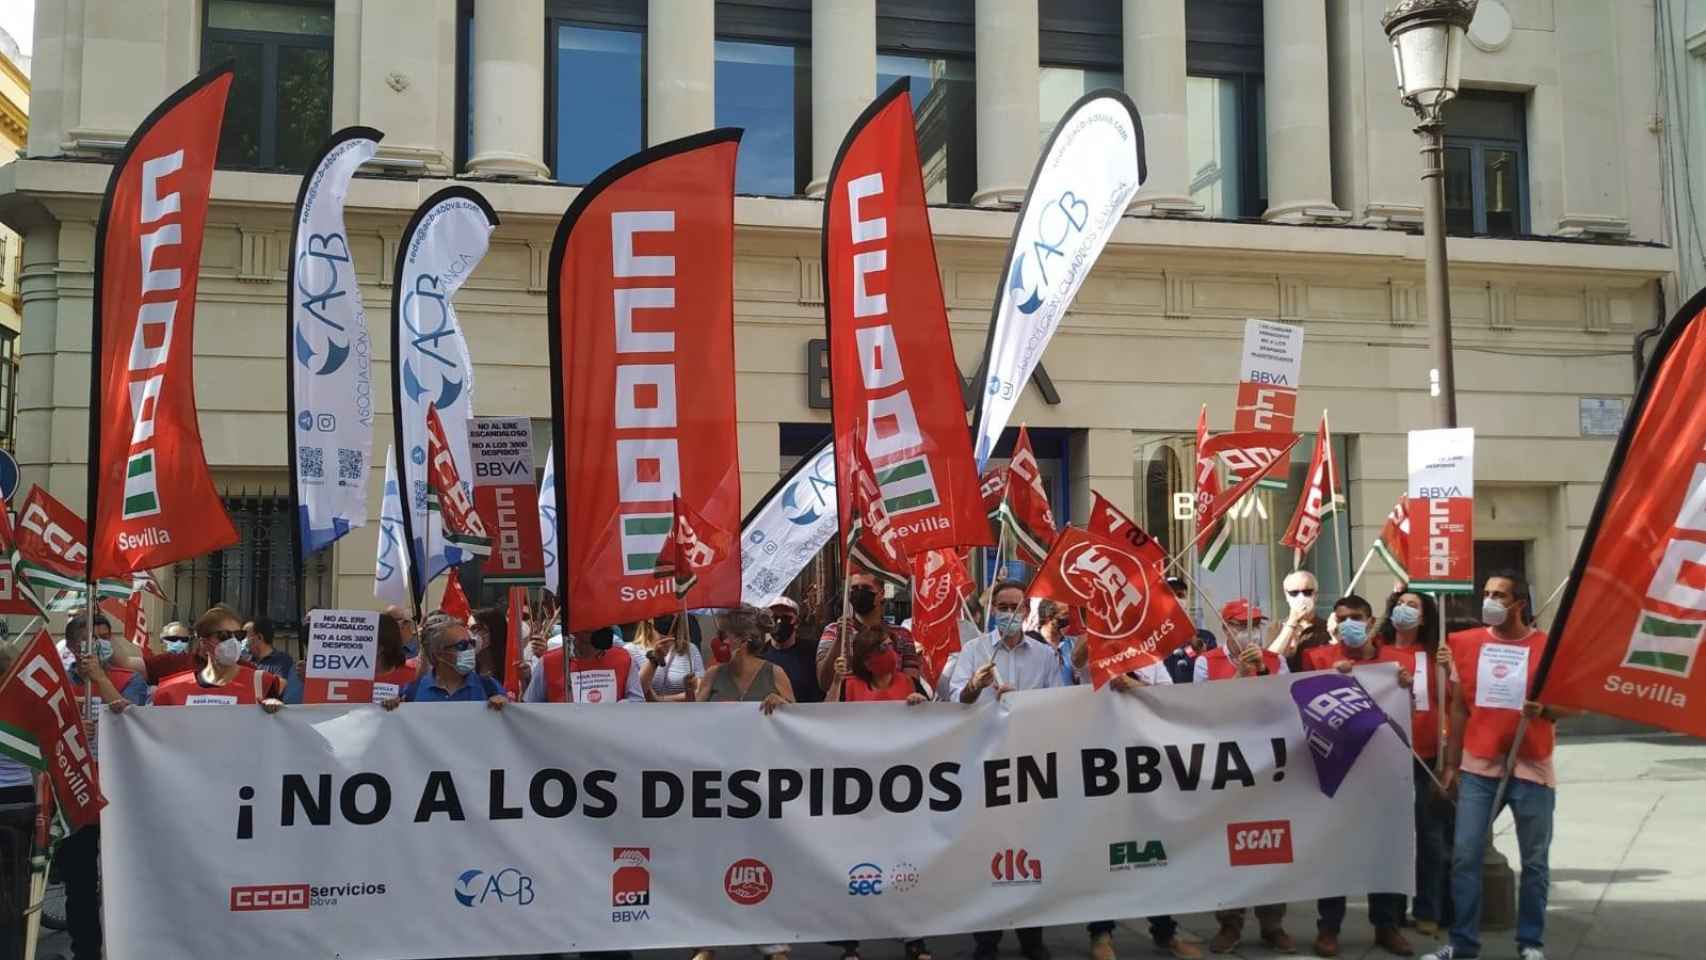 Movilización este lunes 17 contra los despidos en BBVA / CCOO